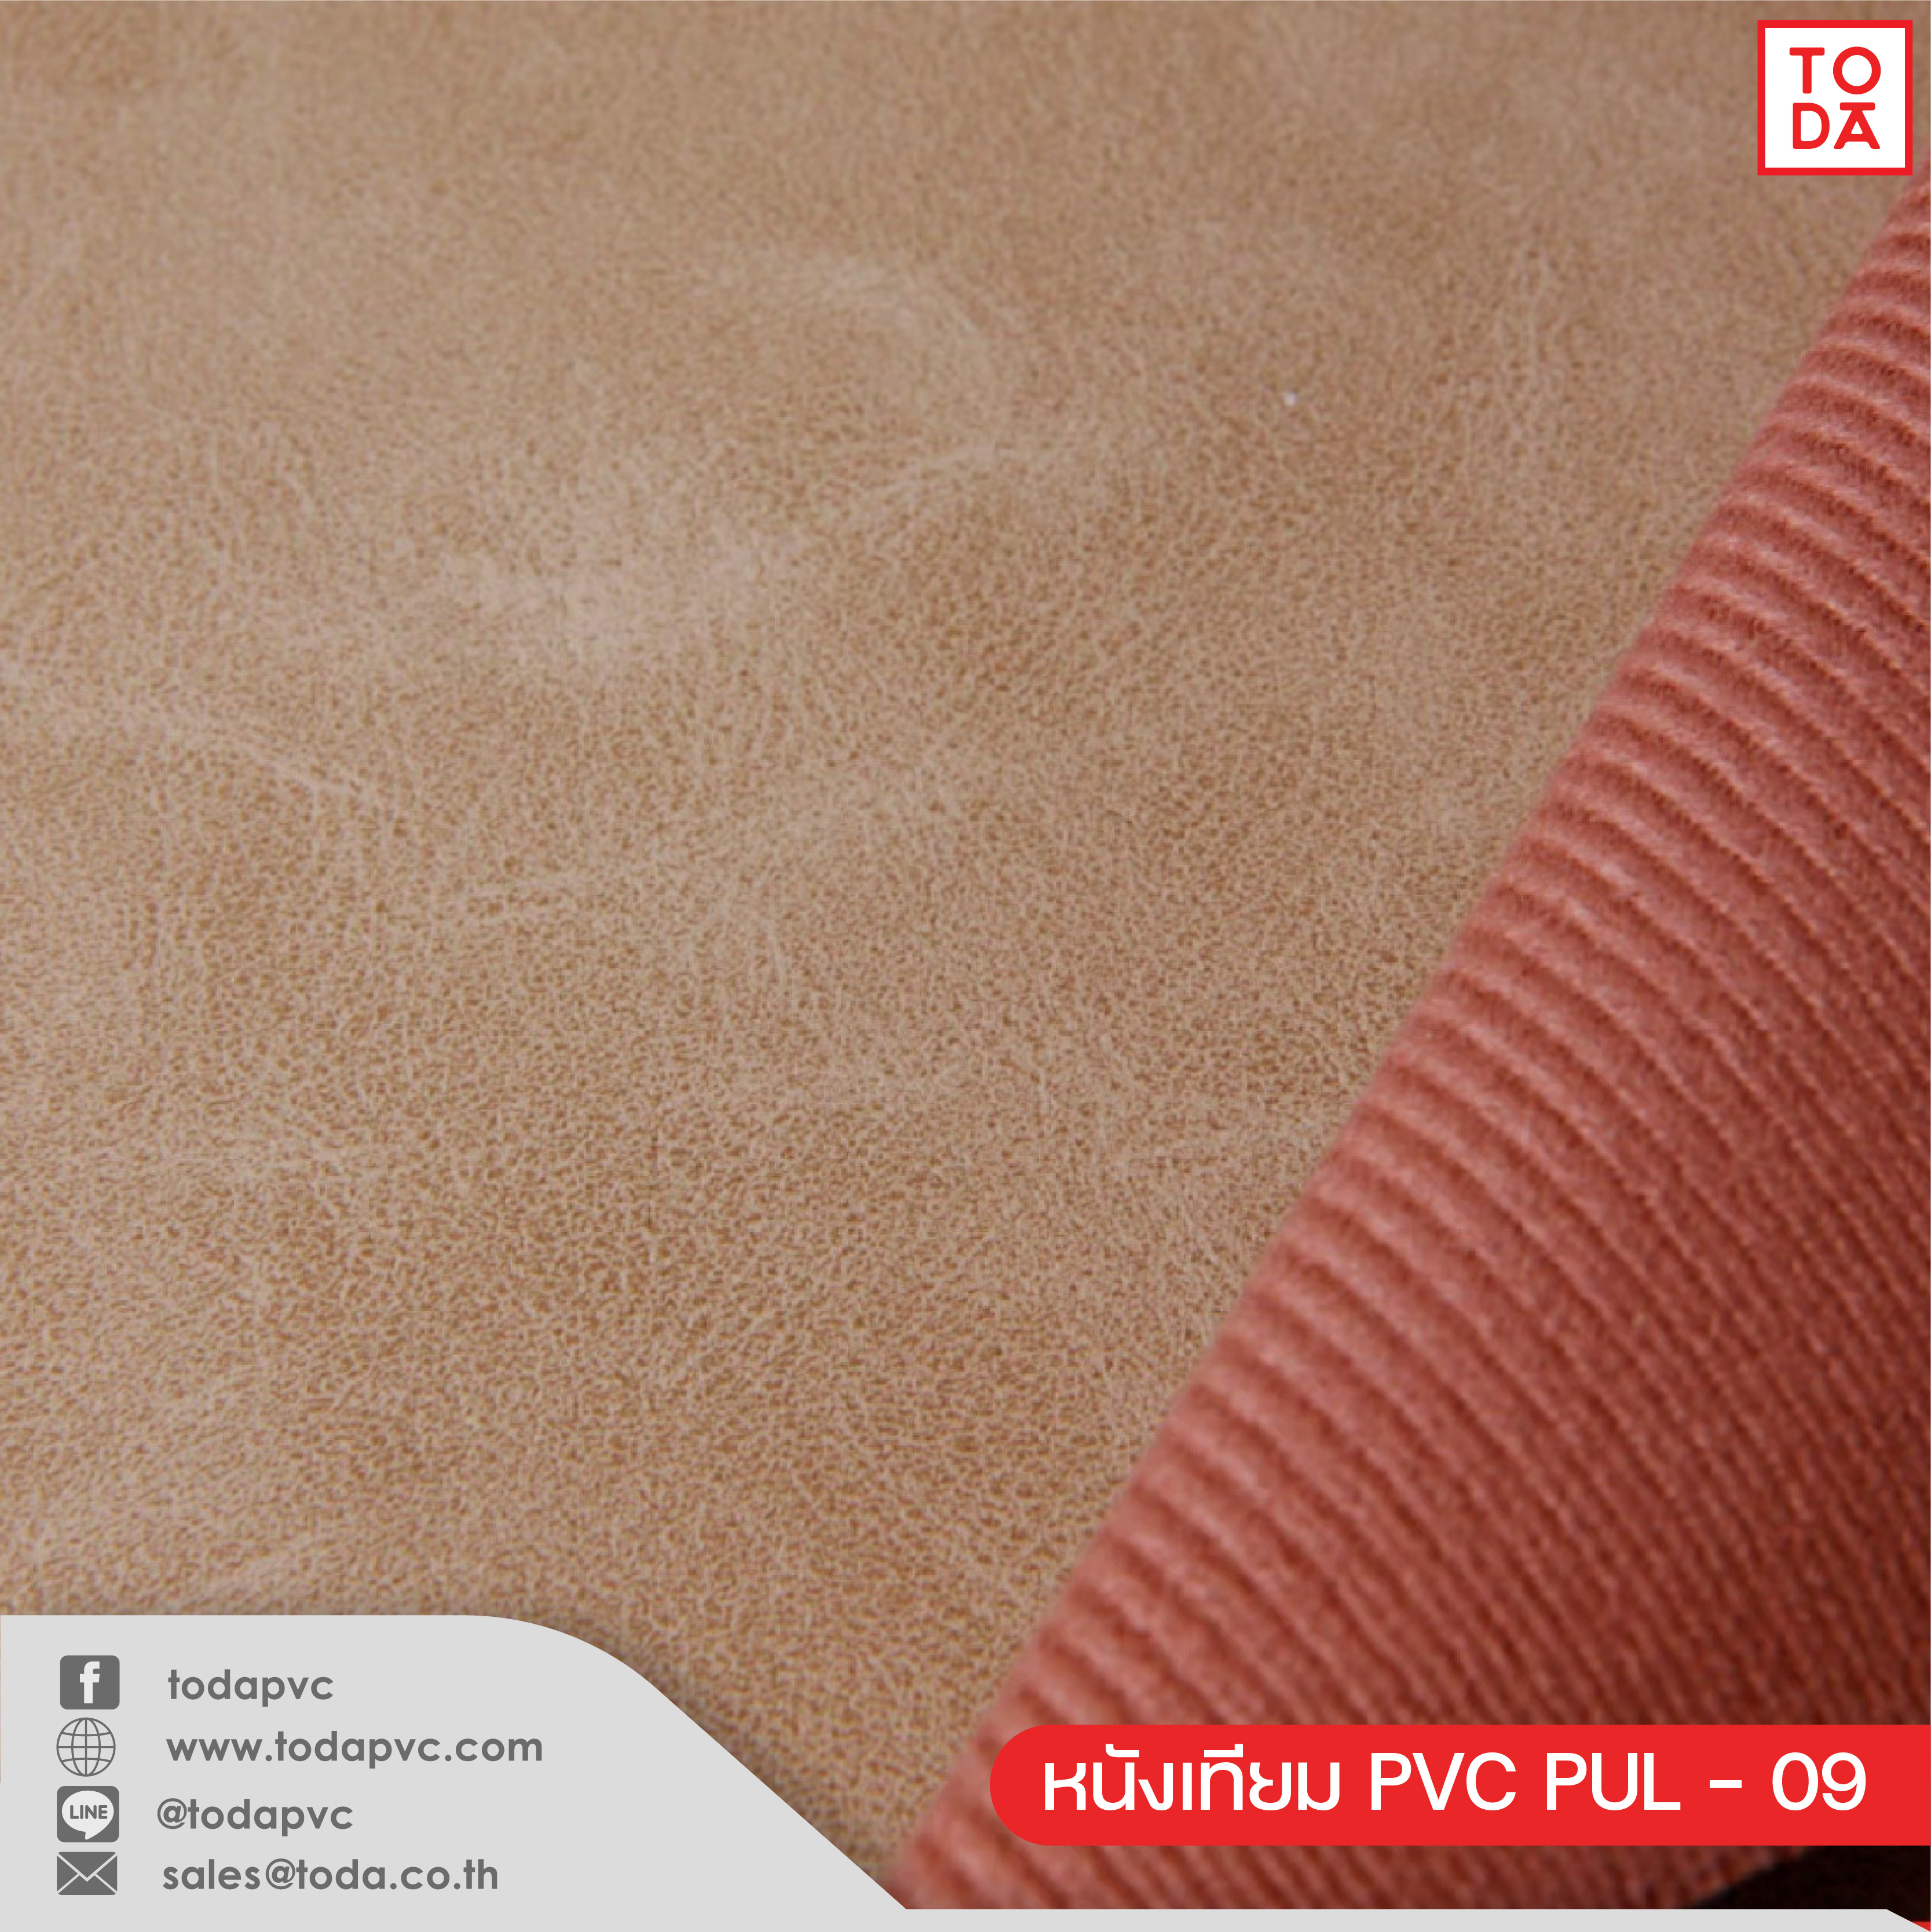 PVC Leather #PB - todapvc